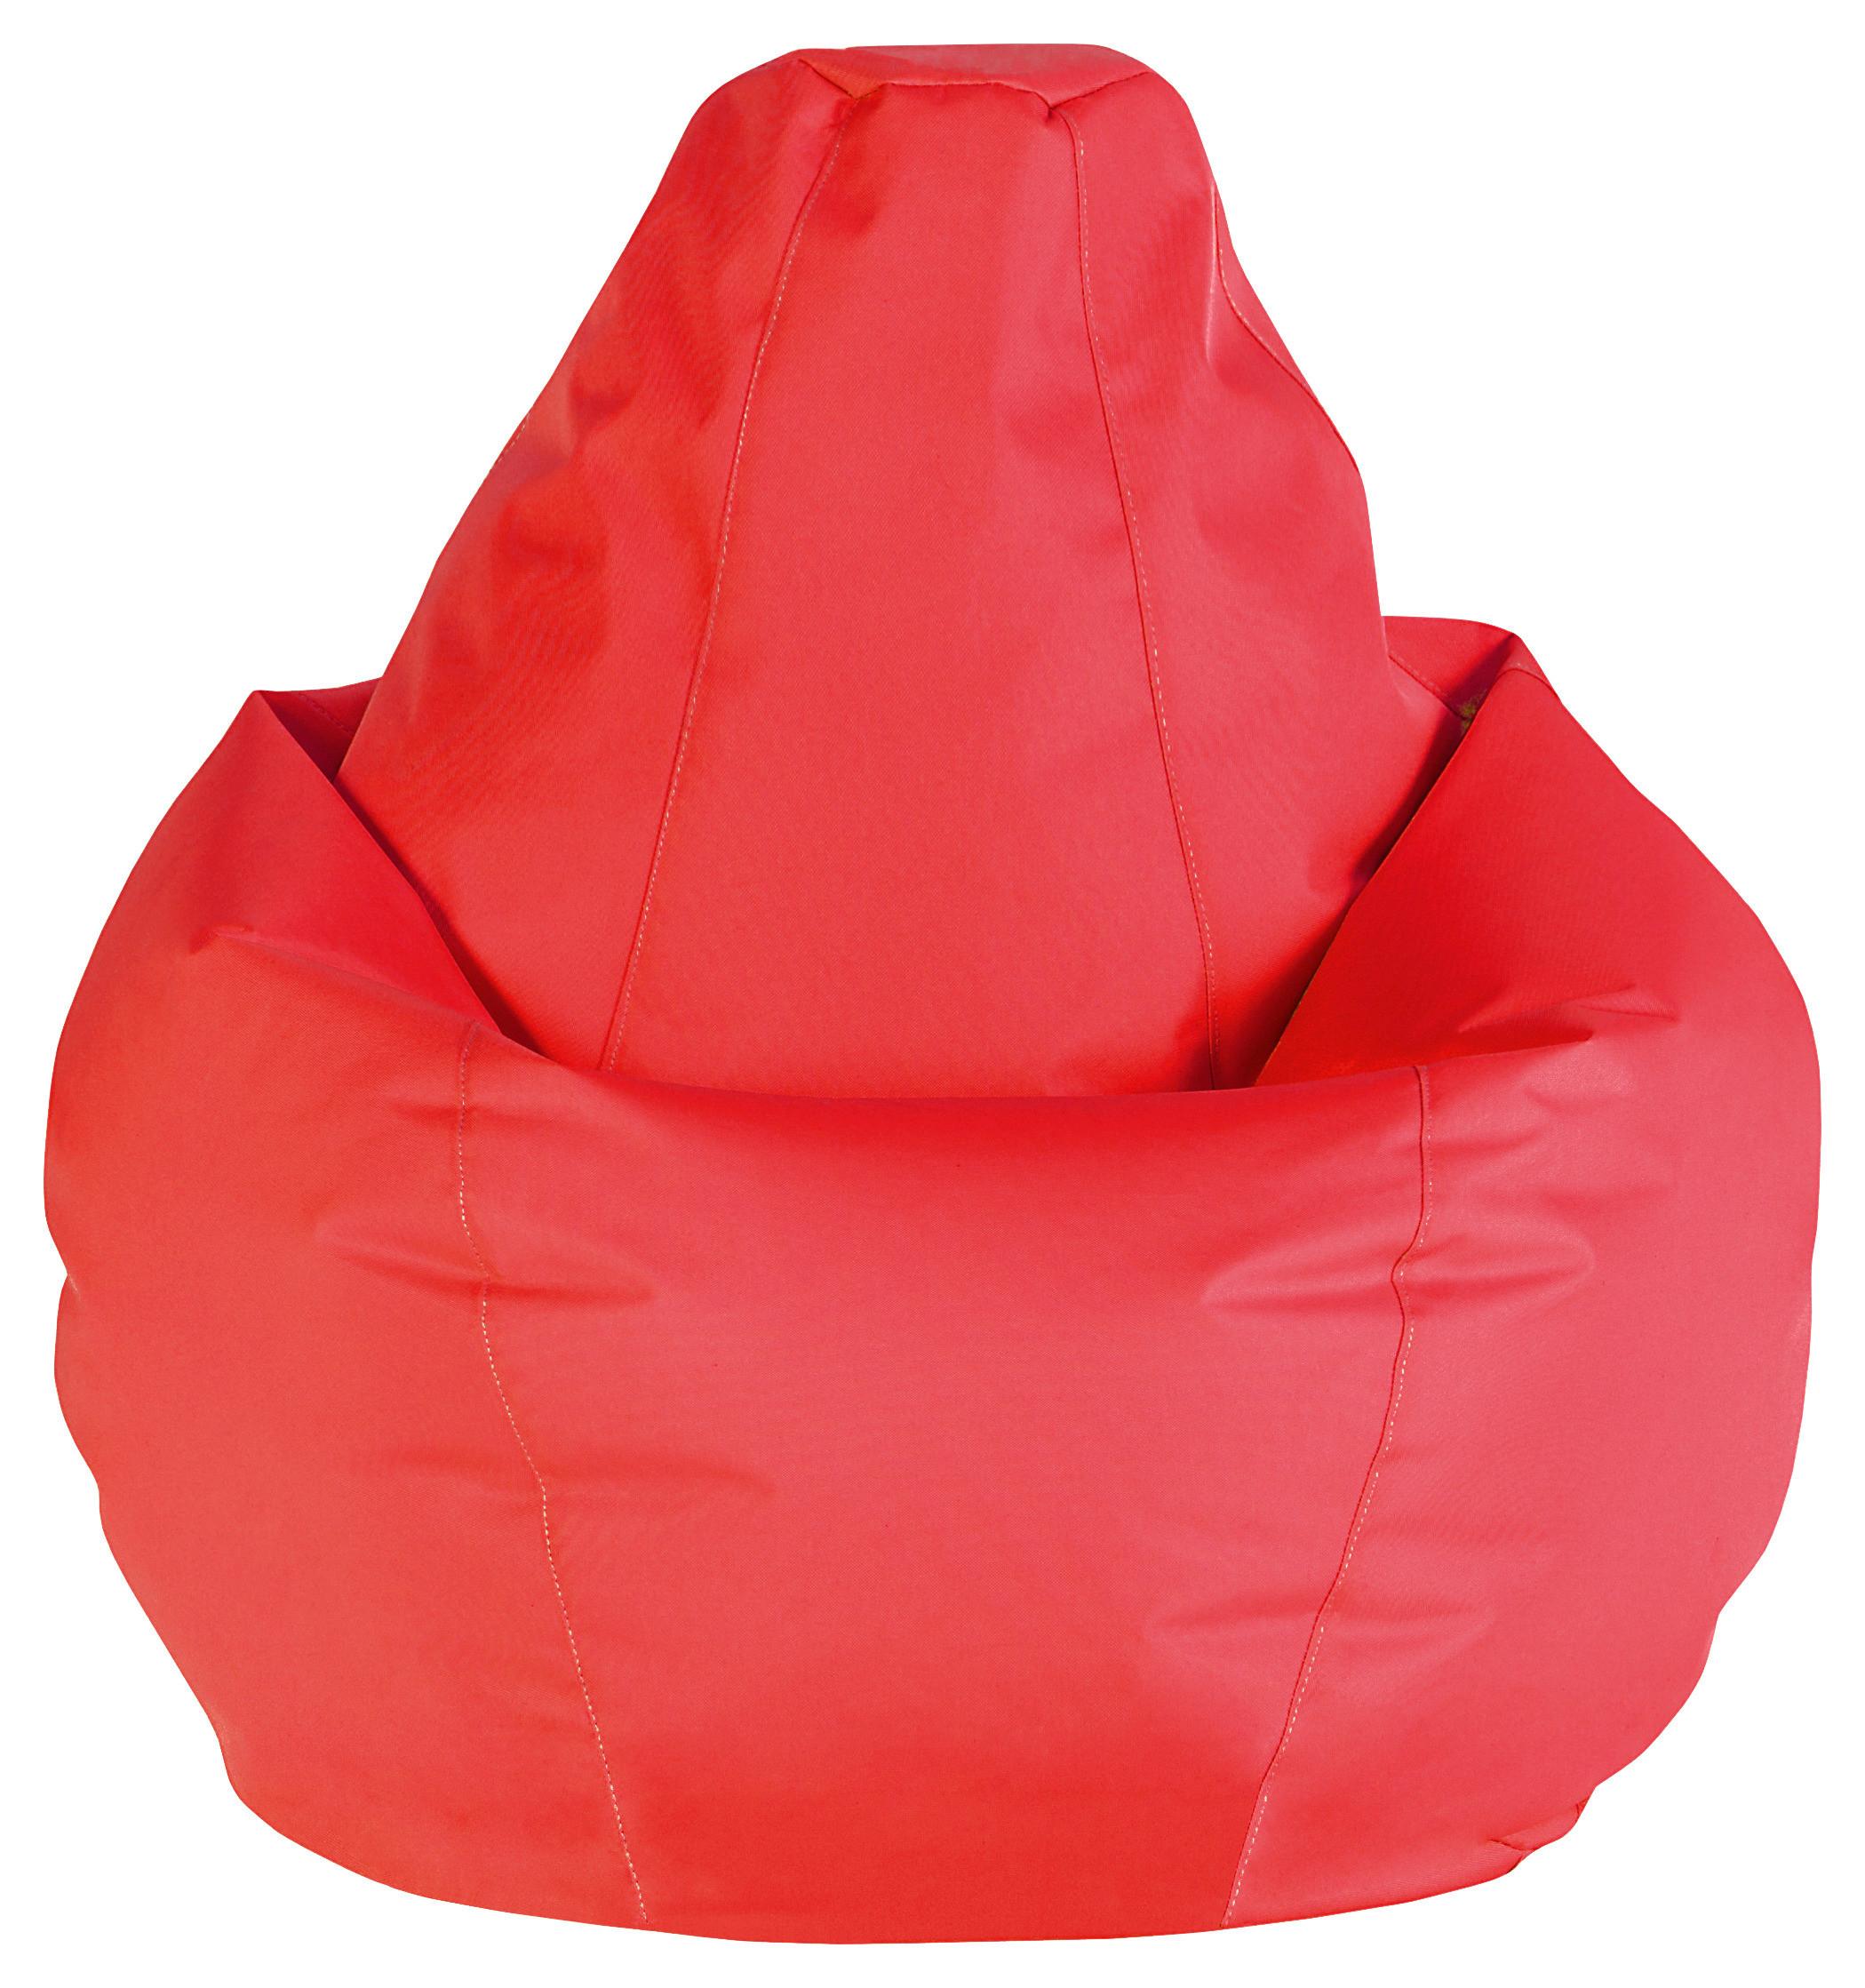 Vreća Za Sjedenje Soft L - crvena, Modern, tekstil (120cm) - Based